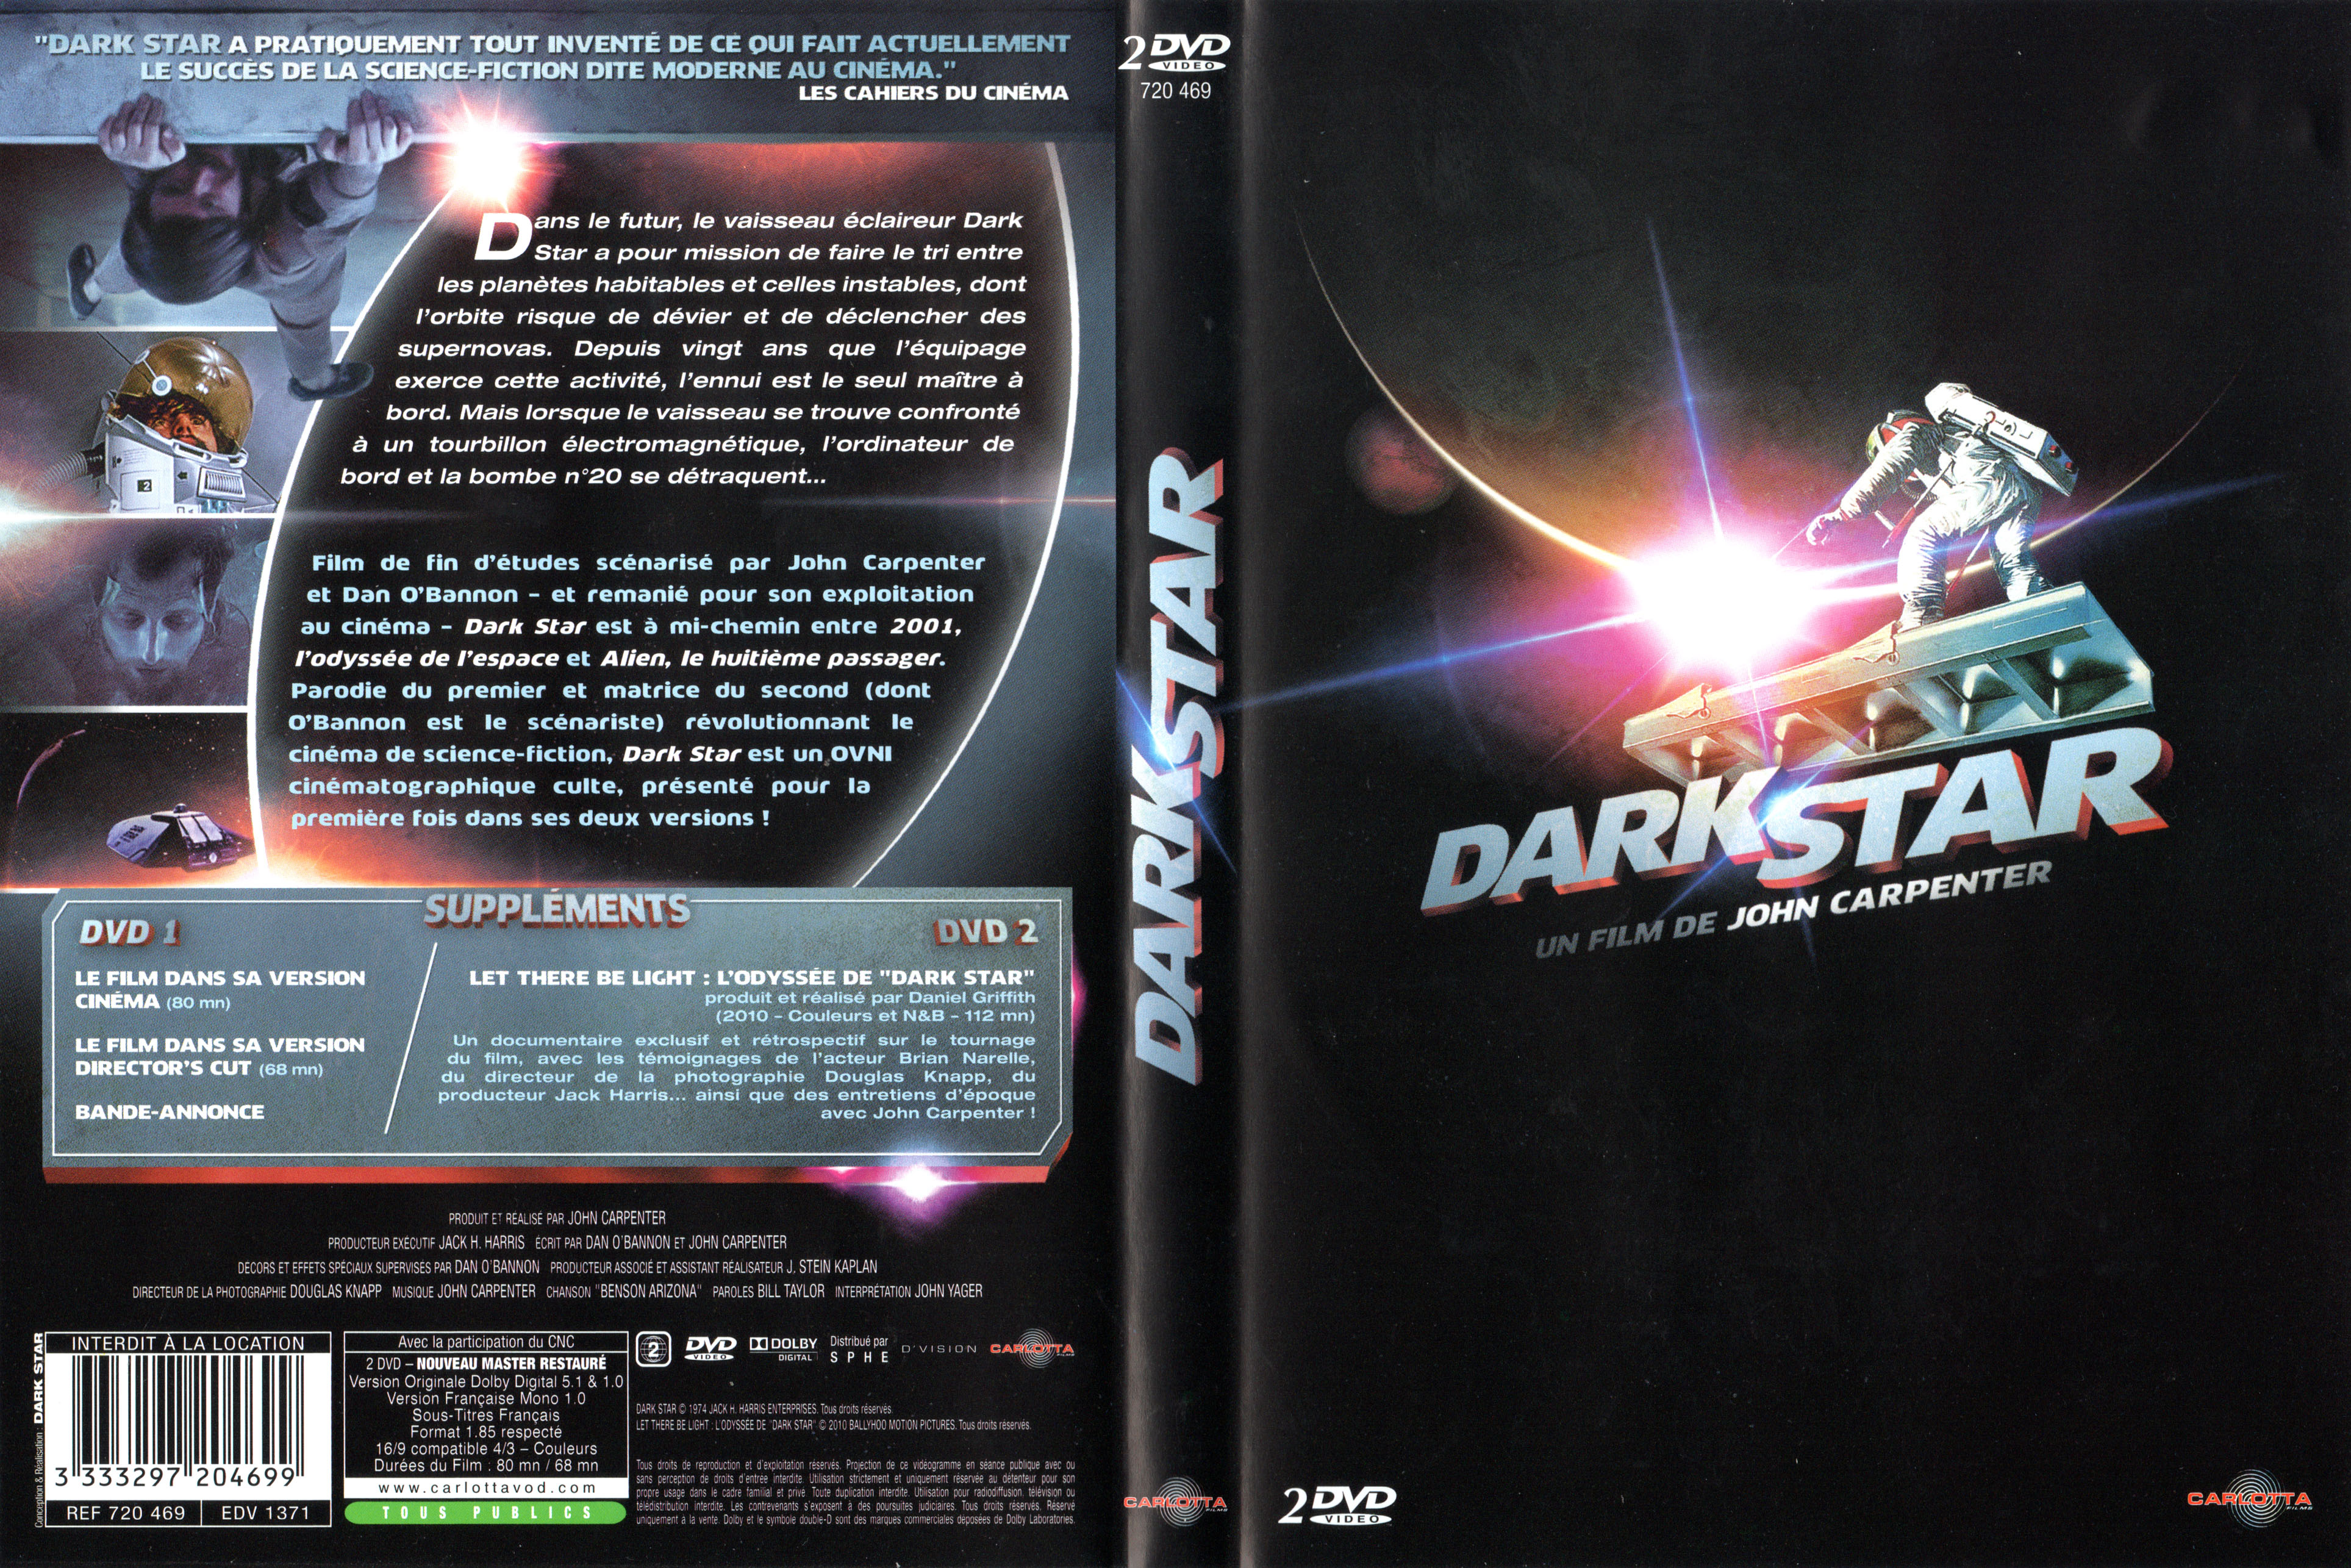 Jaquette DVD Dark Star